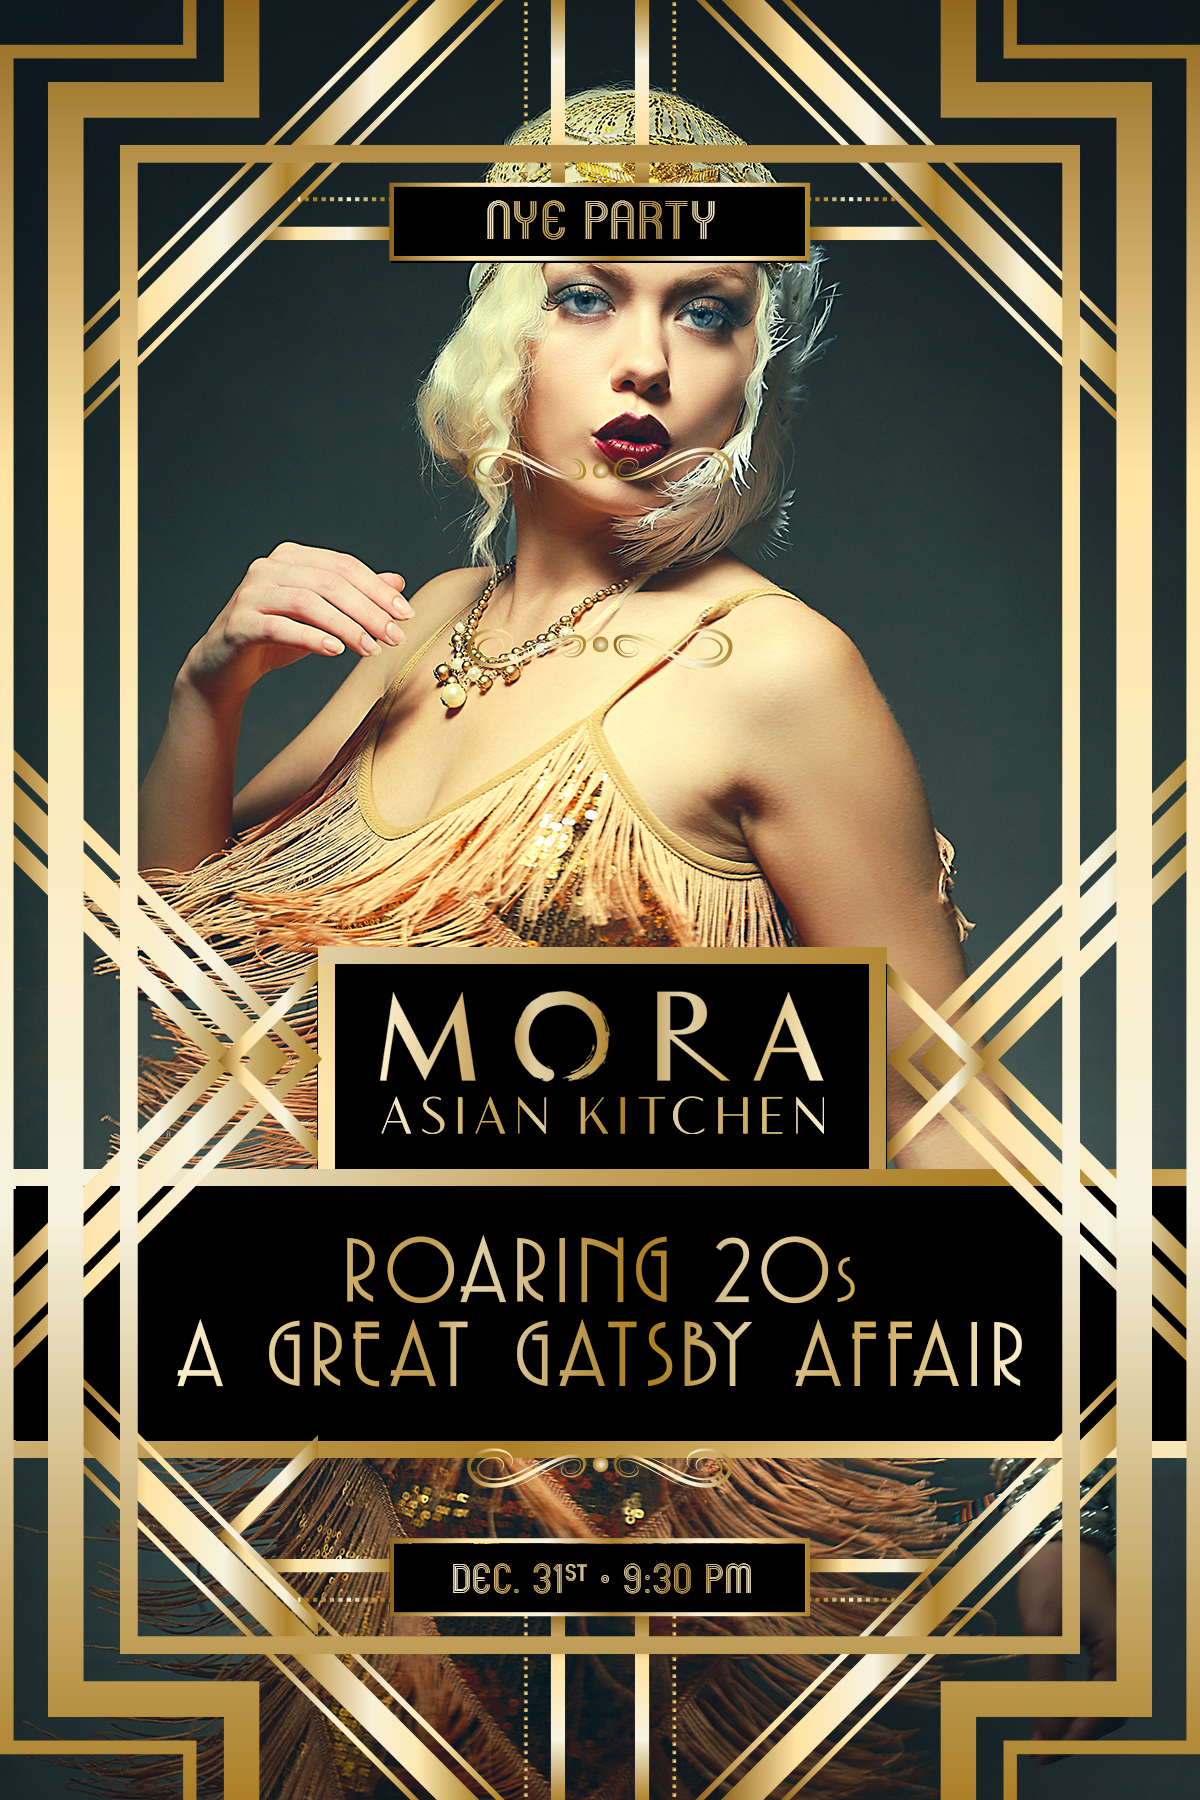 Roaring 20s Gatsby NYE Party at MORA, Bolingbrook